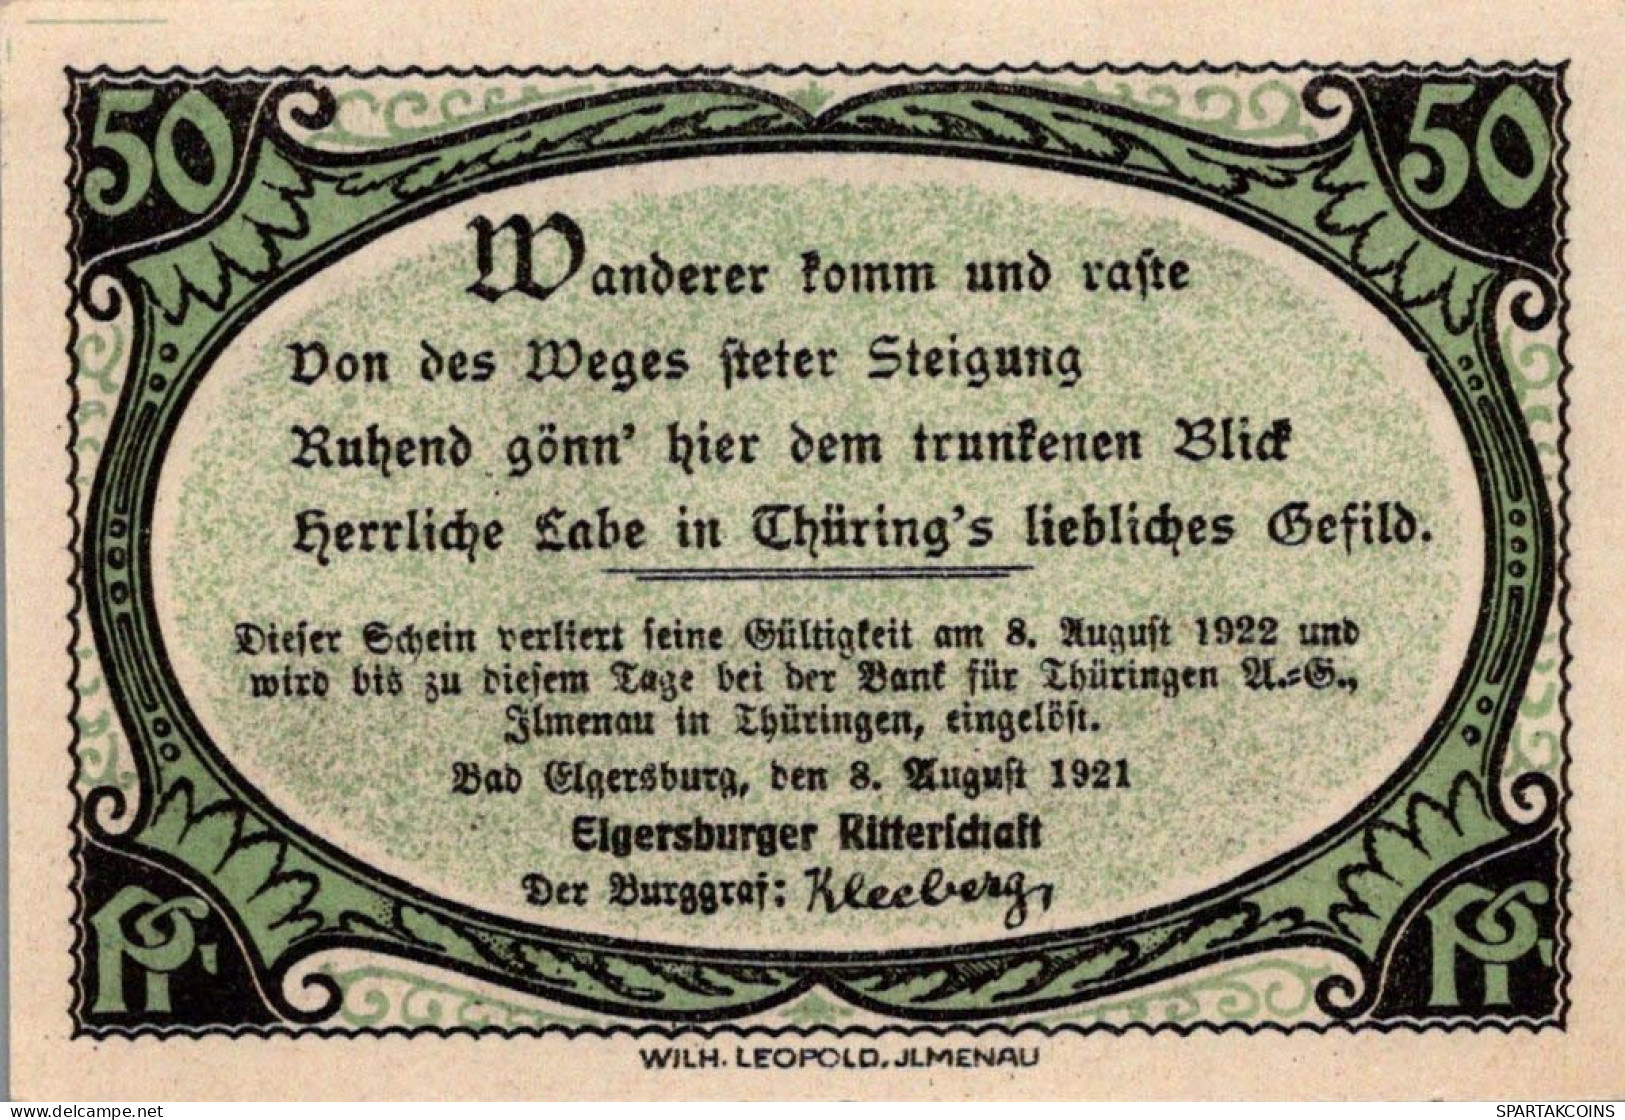 50 PFENNIG 1921 Stadt ELGERSBURG Thuringia UNC DEUTSCHLAND Notgeld #PB171 - [11] Local Banknote Issues